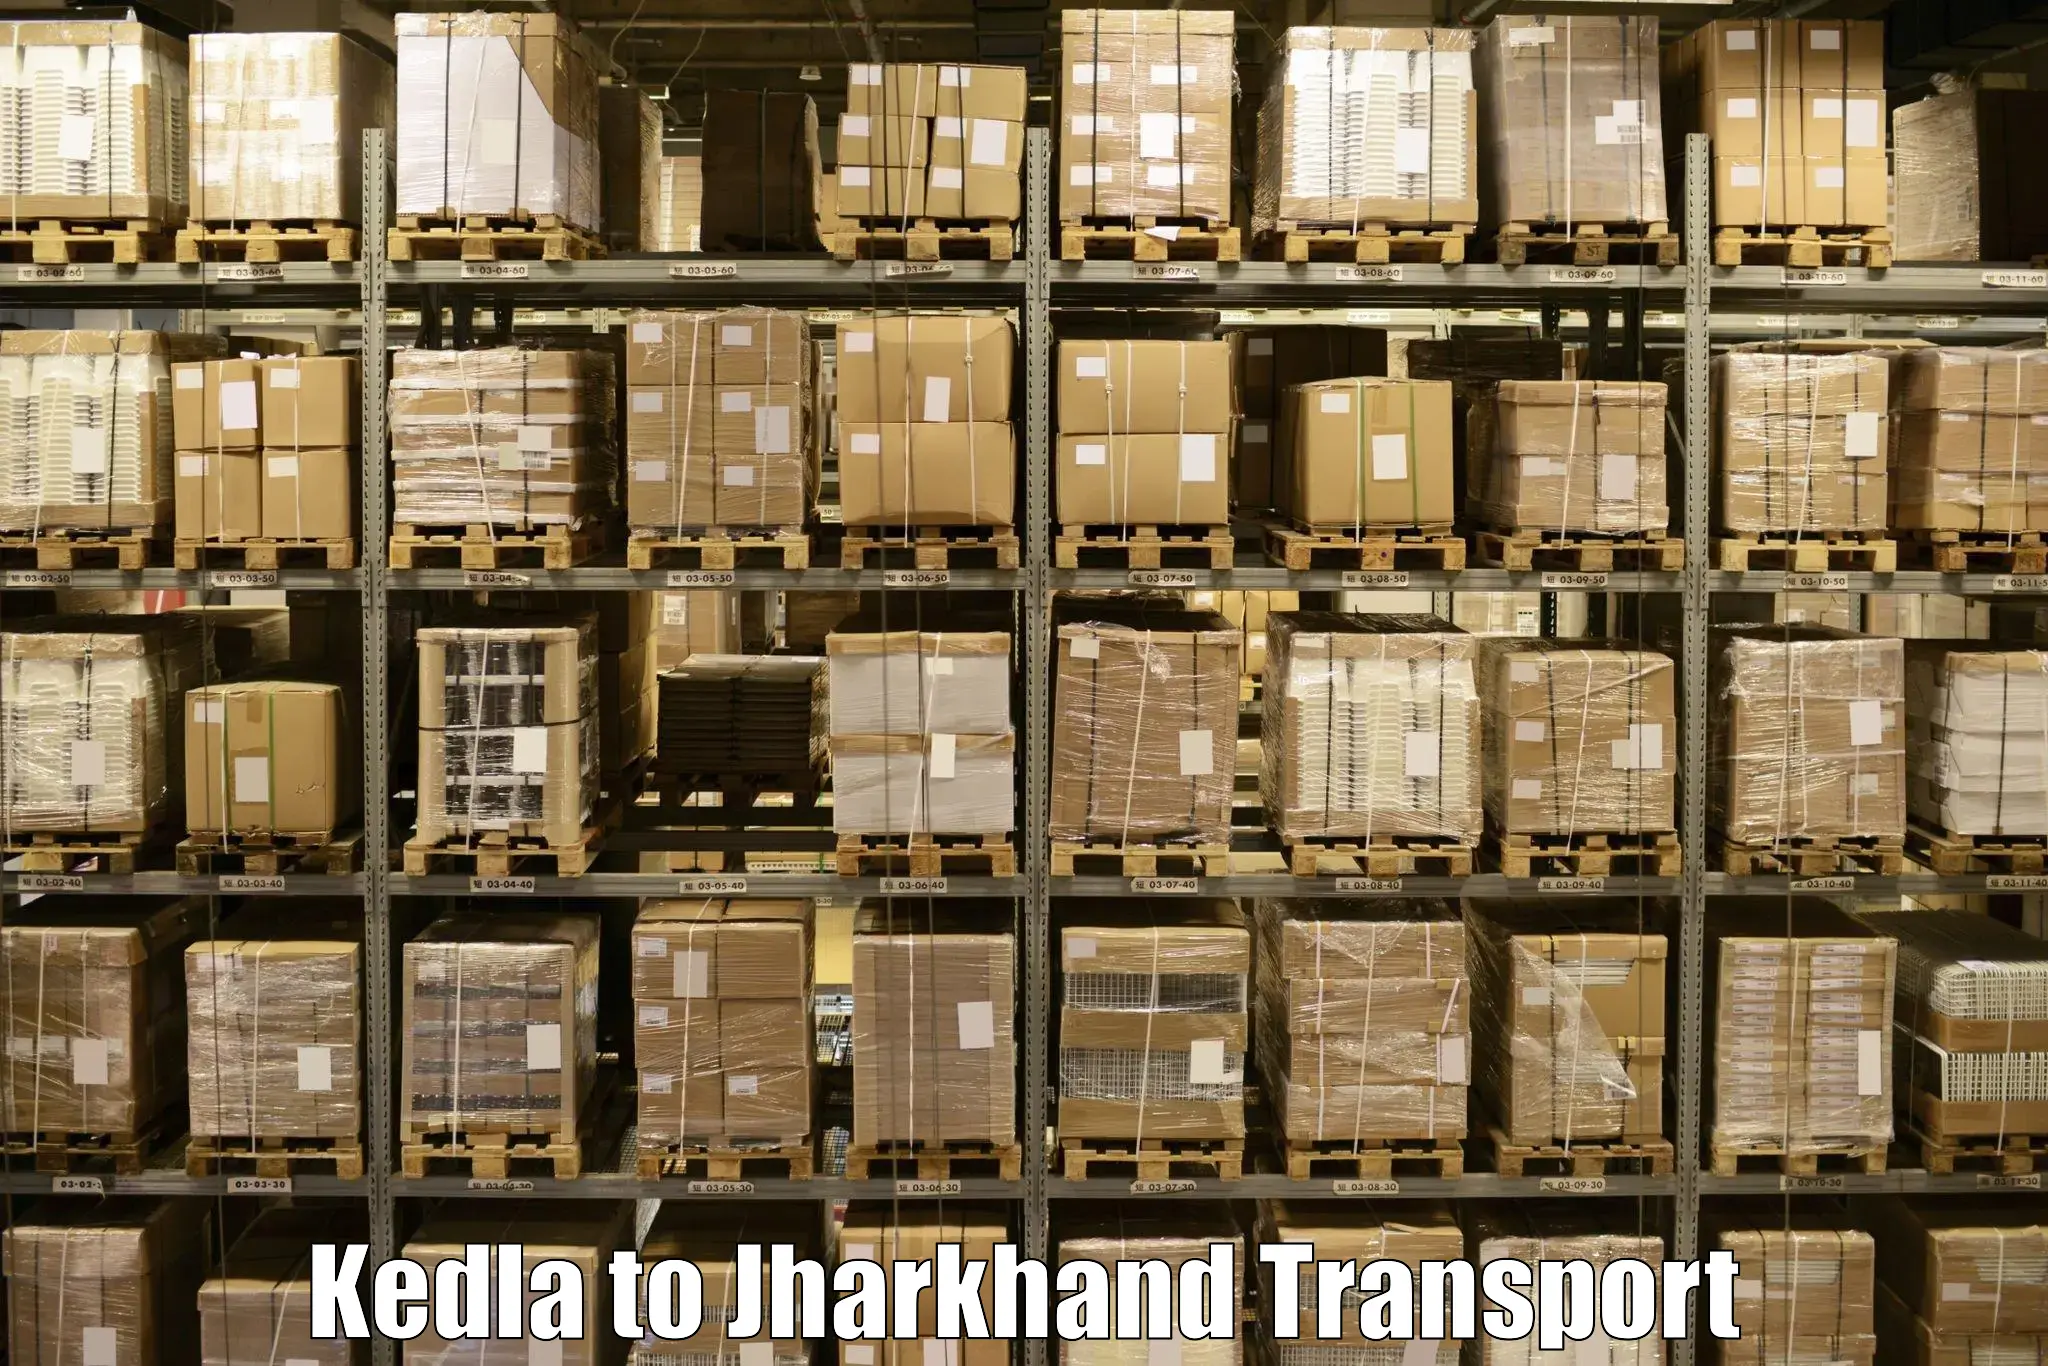 International cargo transportation services Kedla to Jagannathpur